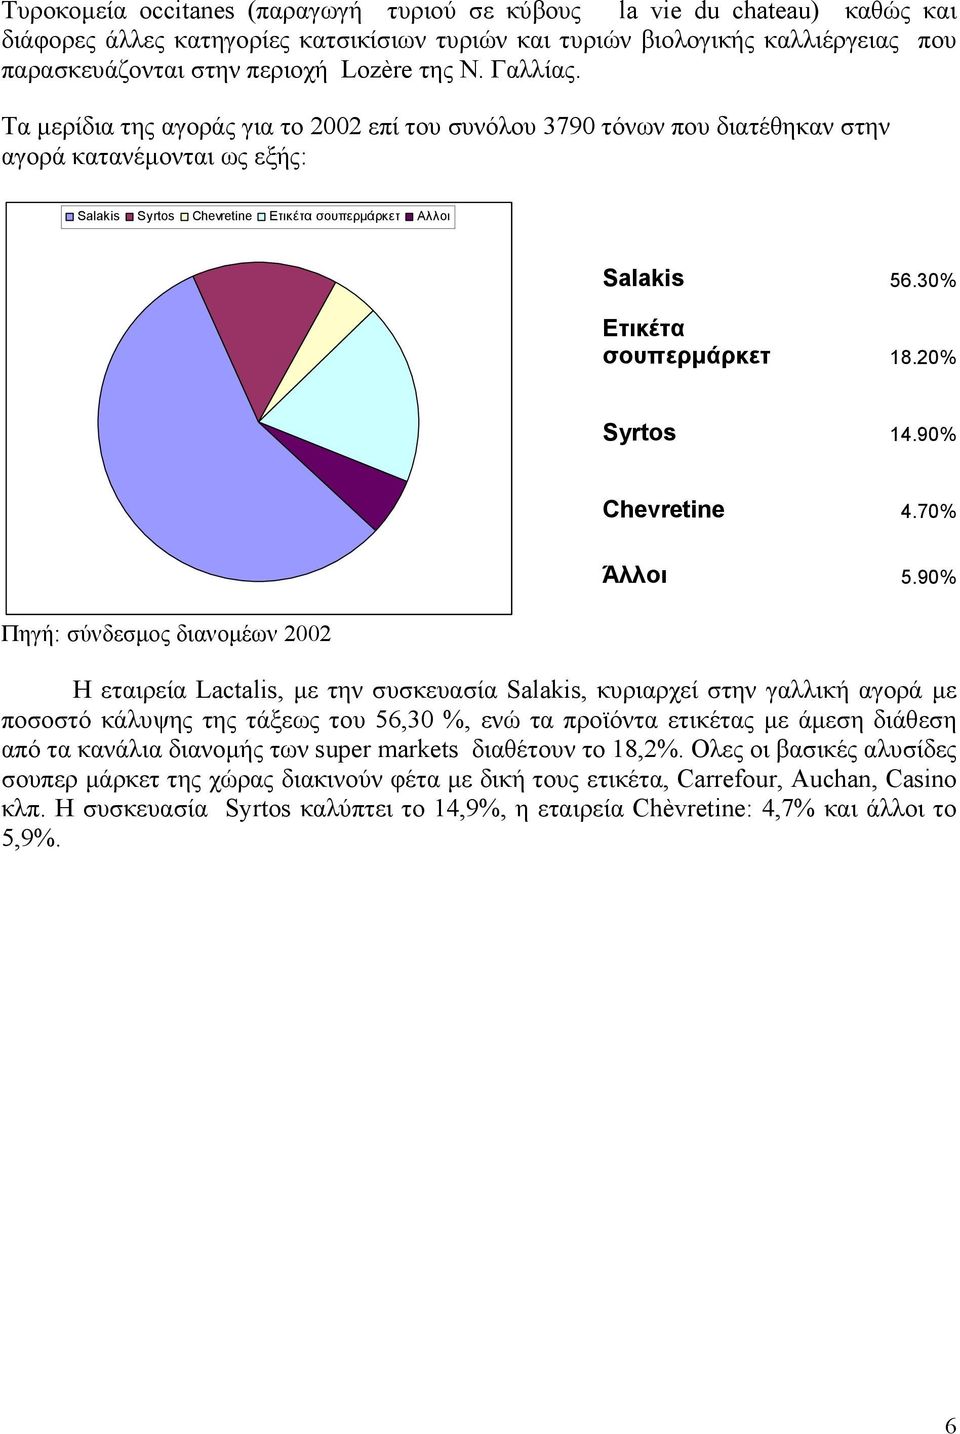 30% Ετικέτα σουπερµάρκετ 18.20% Syrtos 14.90% Chevretine 4.70% Πηγή: σύνδεσµος διανοµέων 2002 Άλλοι 5.